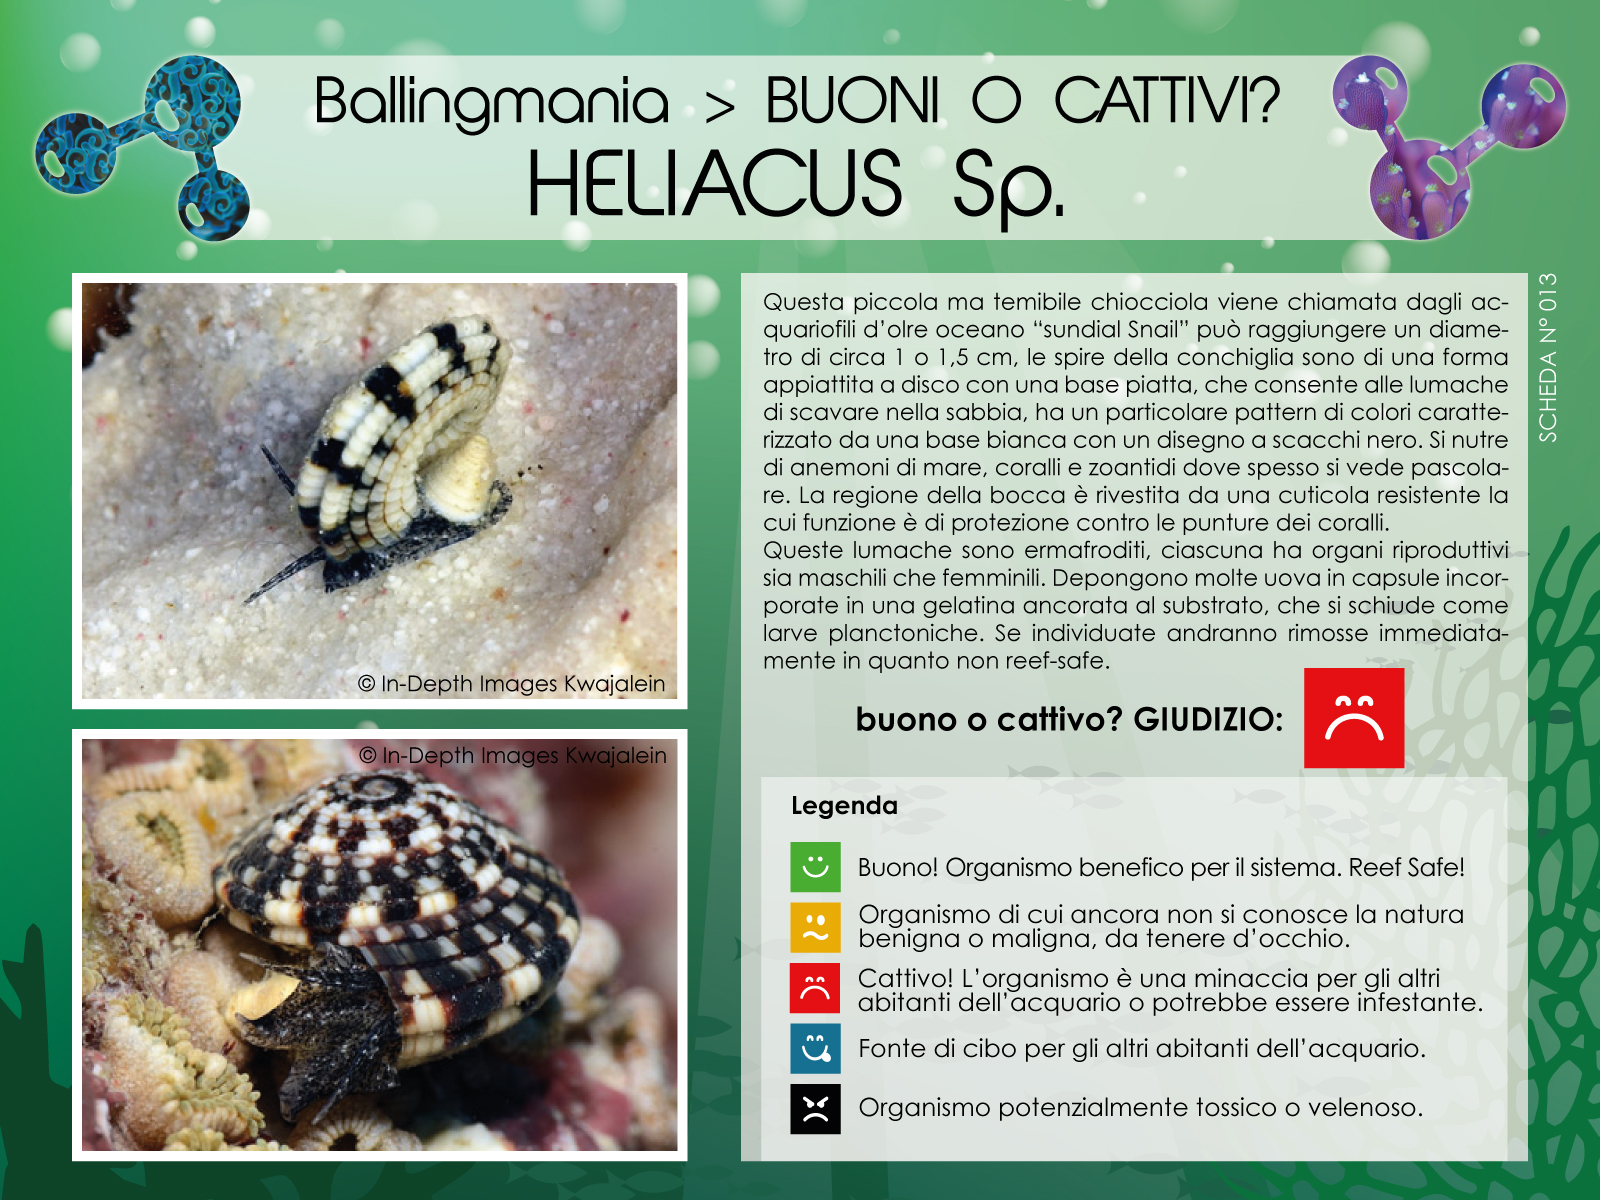 Heliacus Sp.